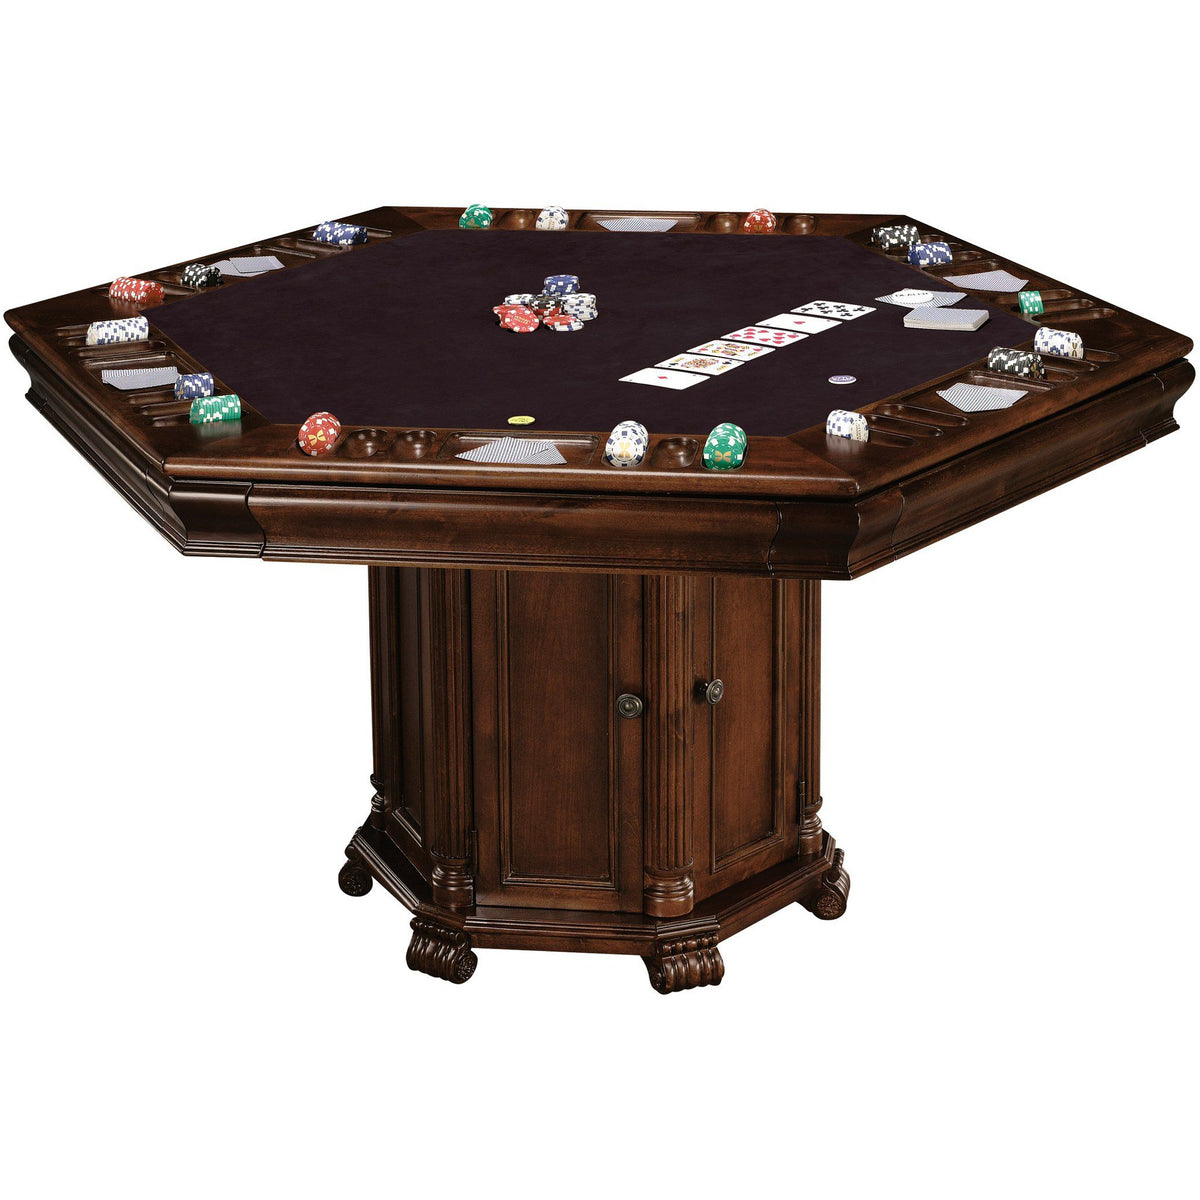 Карточный столик. Покерный стол. Стол для покера. Столик для карточных игр. Круглый покерный стол.